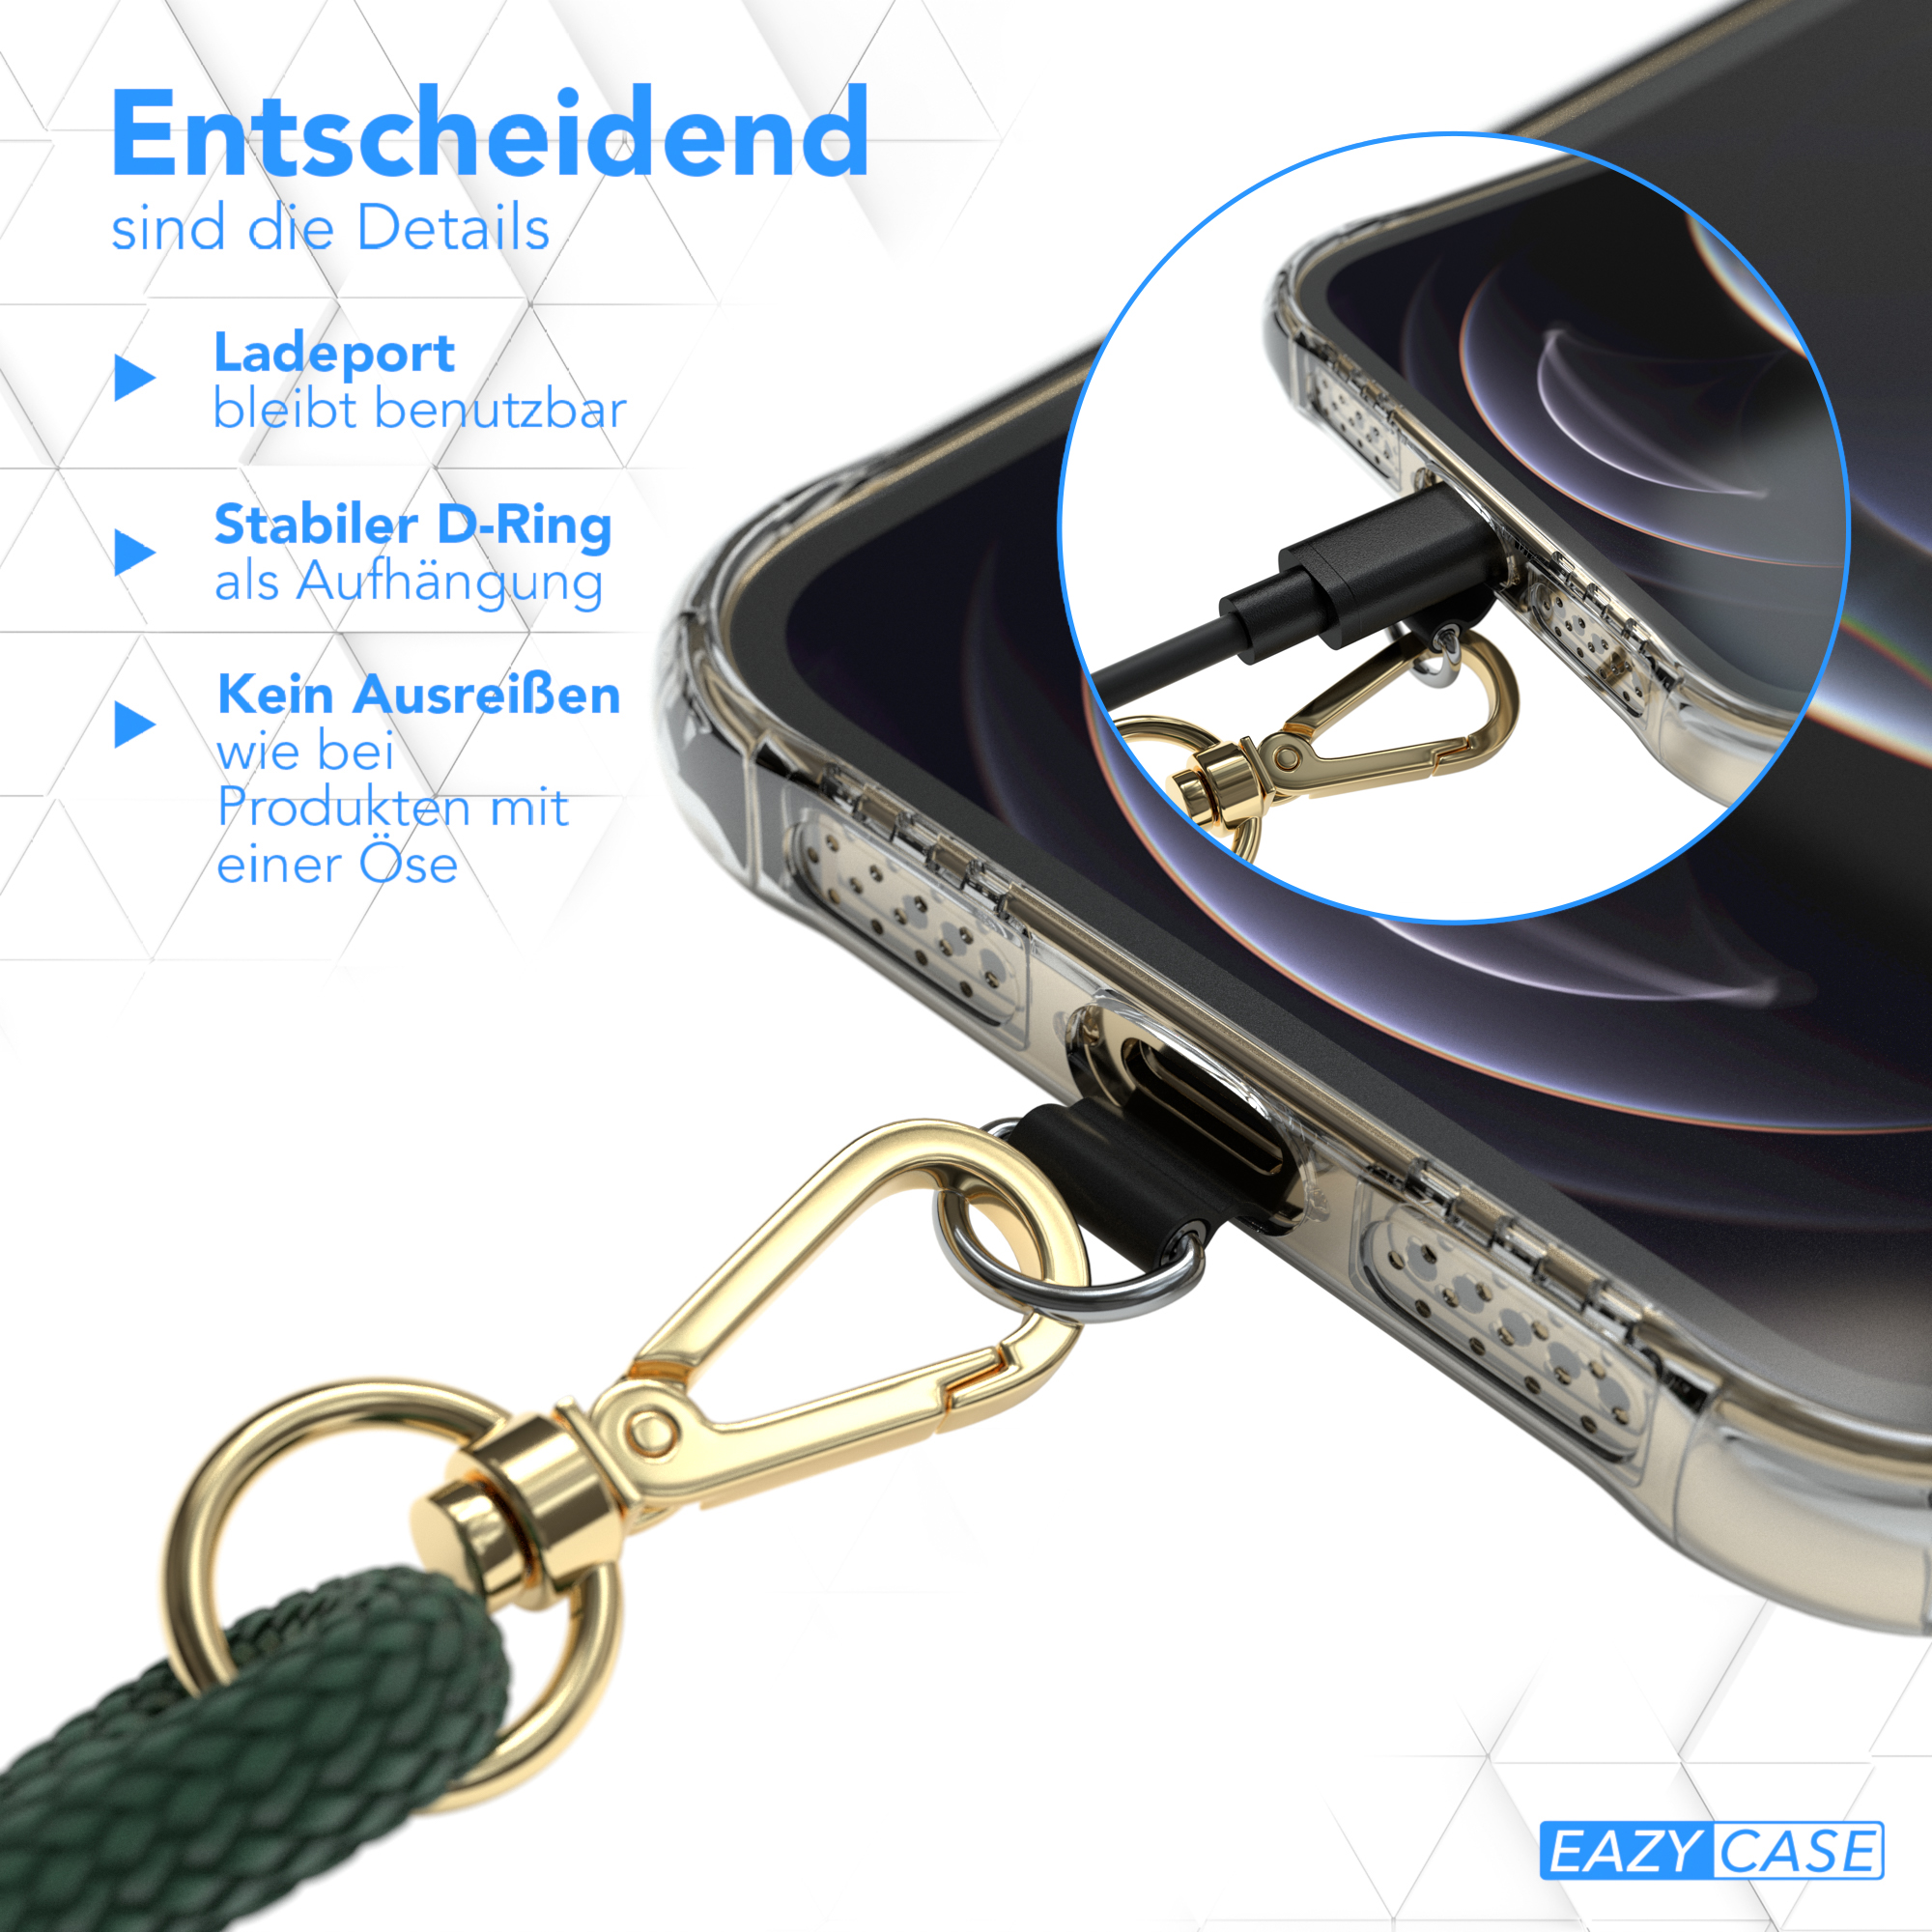 EAZY CASE Handyketten-Set für Smartphone Clips Universal, Gold nutzbar, Grün Universal, Umhängetasche, alle Modelle